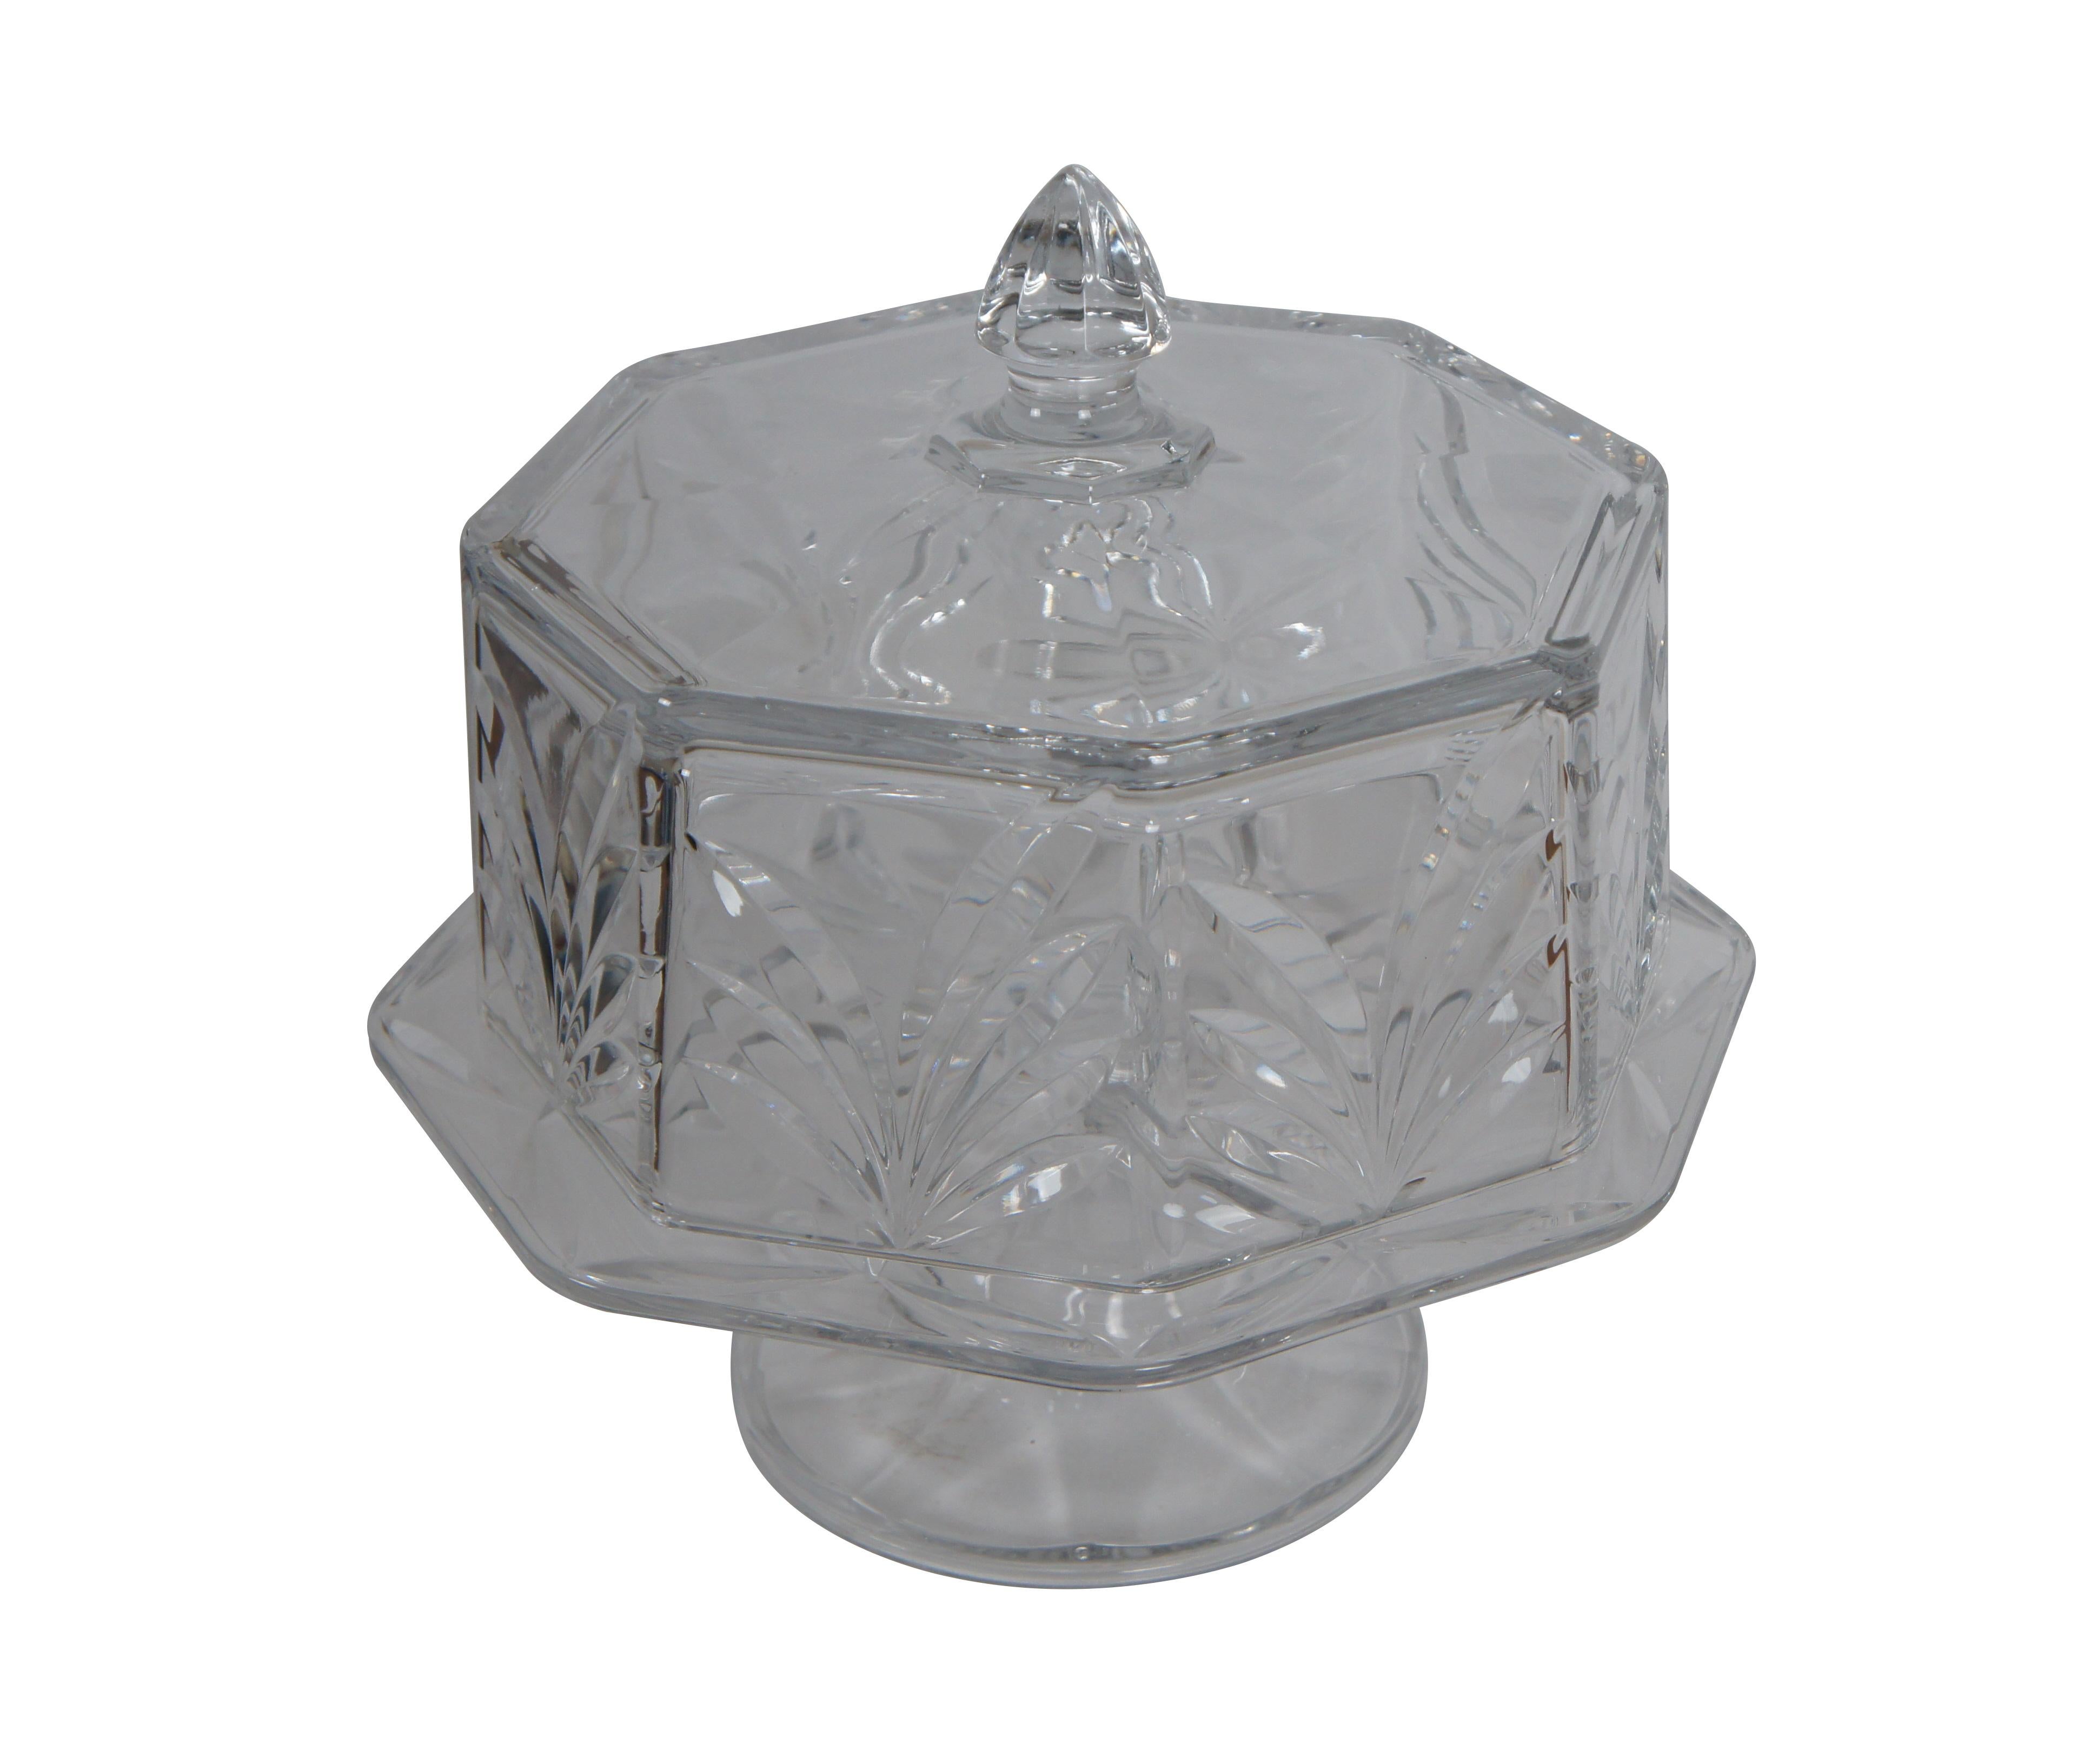 Support vintage pour assiette à gâteau en cristal taillé lourd, de forme octogonale avec un fleuron en forme de dôme et une base à pieds.

Dimensions :
13,5